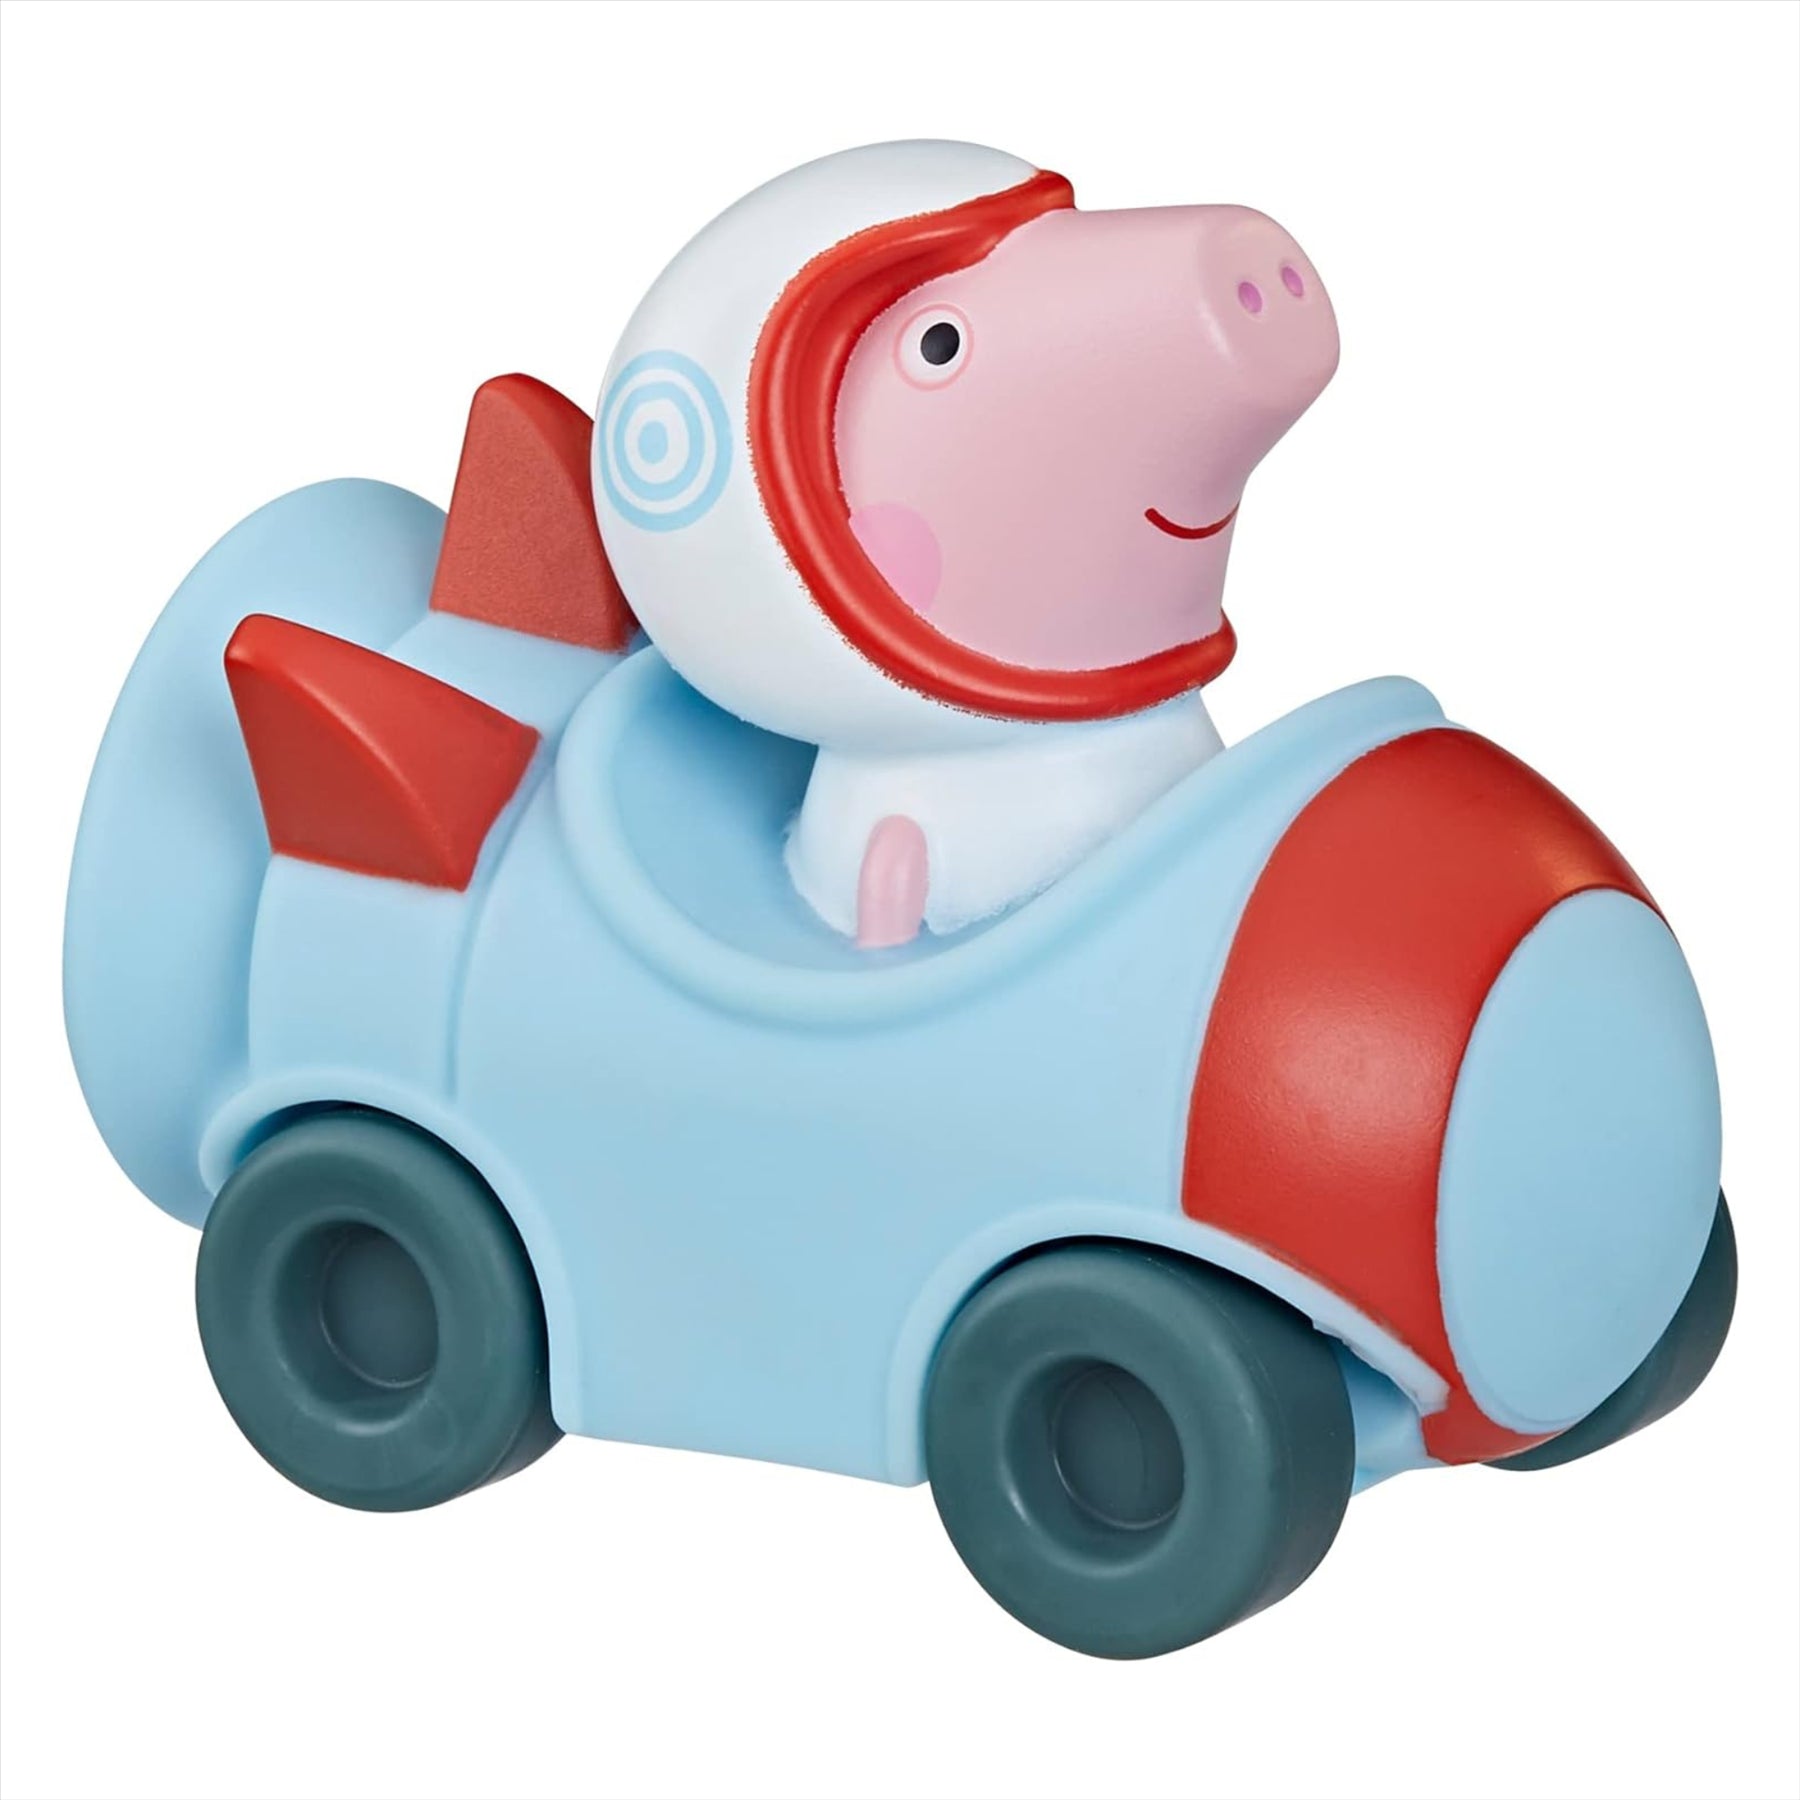 Peppa Pig Little Buggies - Peppa Pig Astronaut Figure In Rocketship Toy Vehicle - Toptoys2u